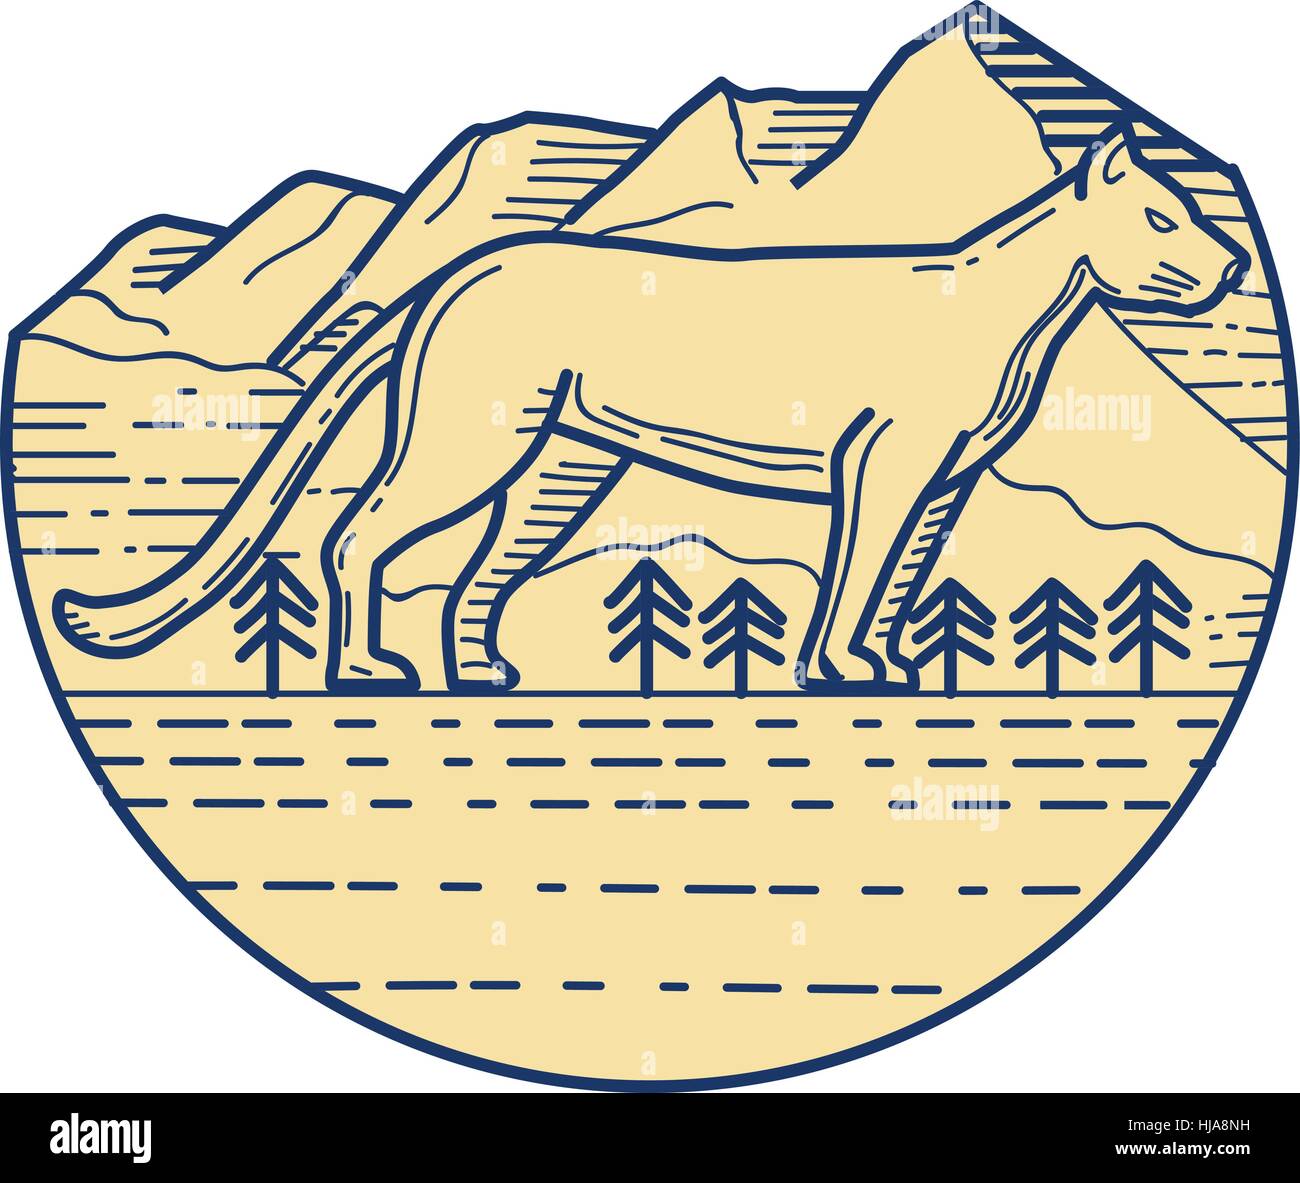 Mono-Linie Stil Abbildung von einem Cougar Mountain Lion der Seitenansicht im inneren Halbkreis mit Berg und Bäume im Hintergrund. Stock Vektor